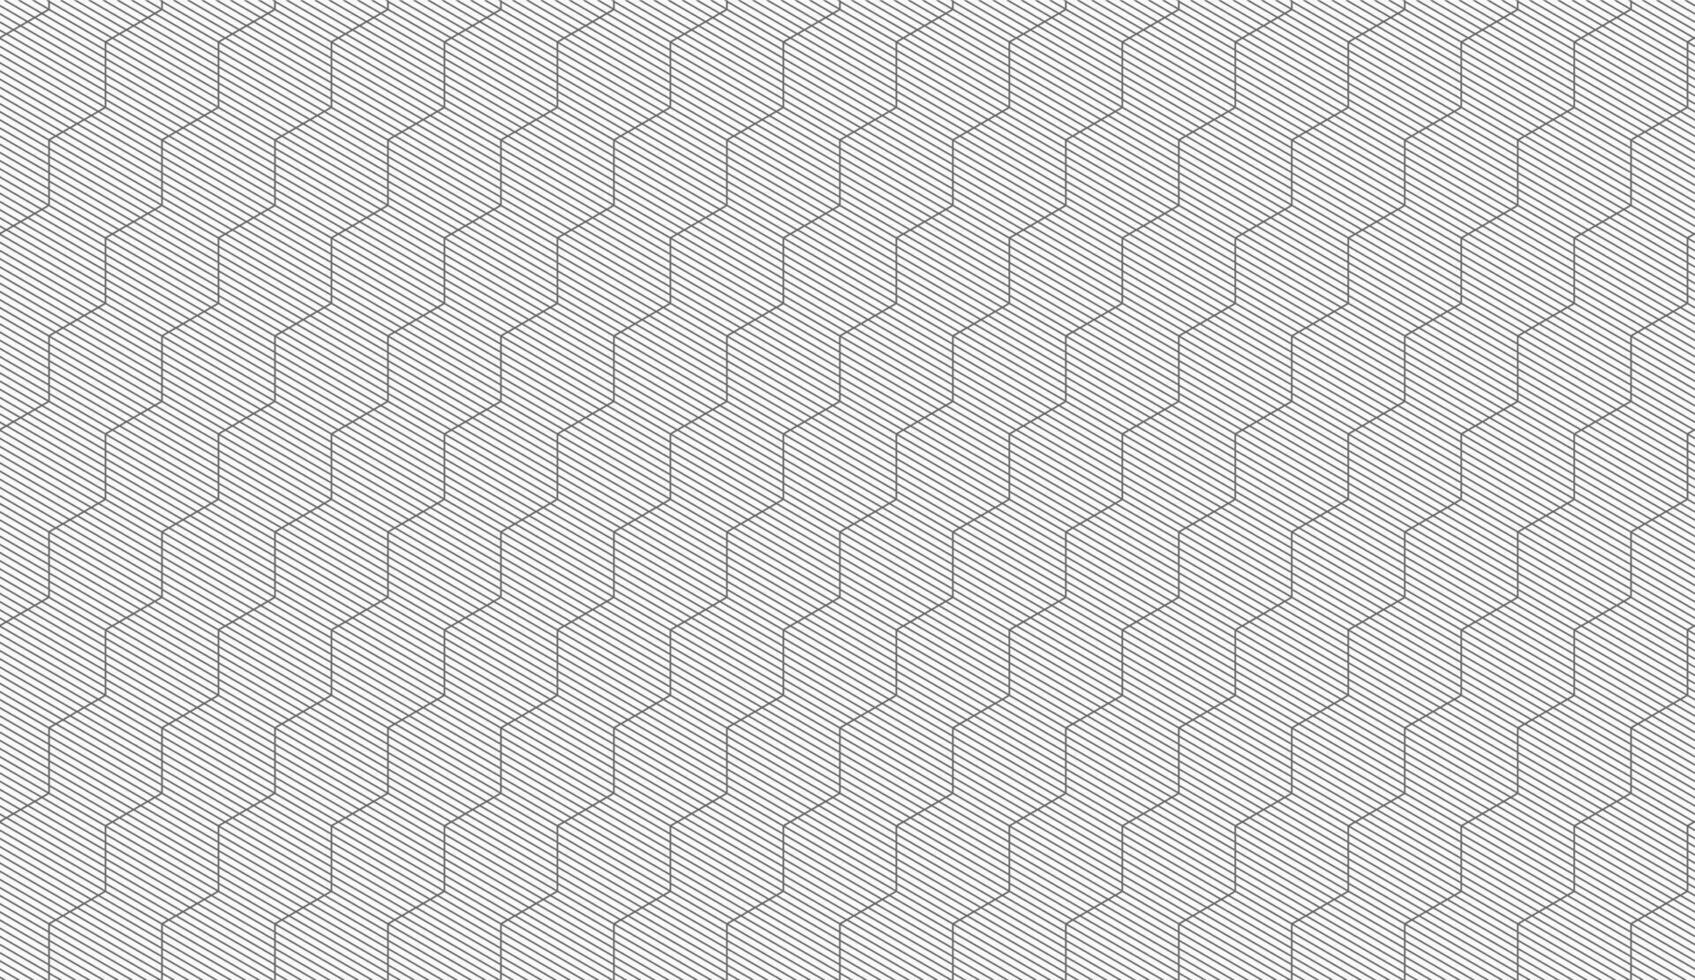 patrón geométrico sin fisuras. fondo de vector de diseño moderno para fondo web o impresión en papel.